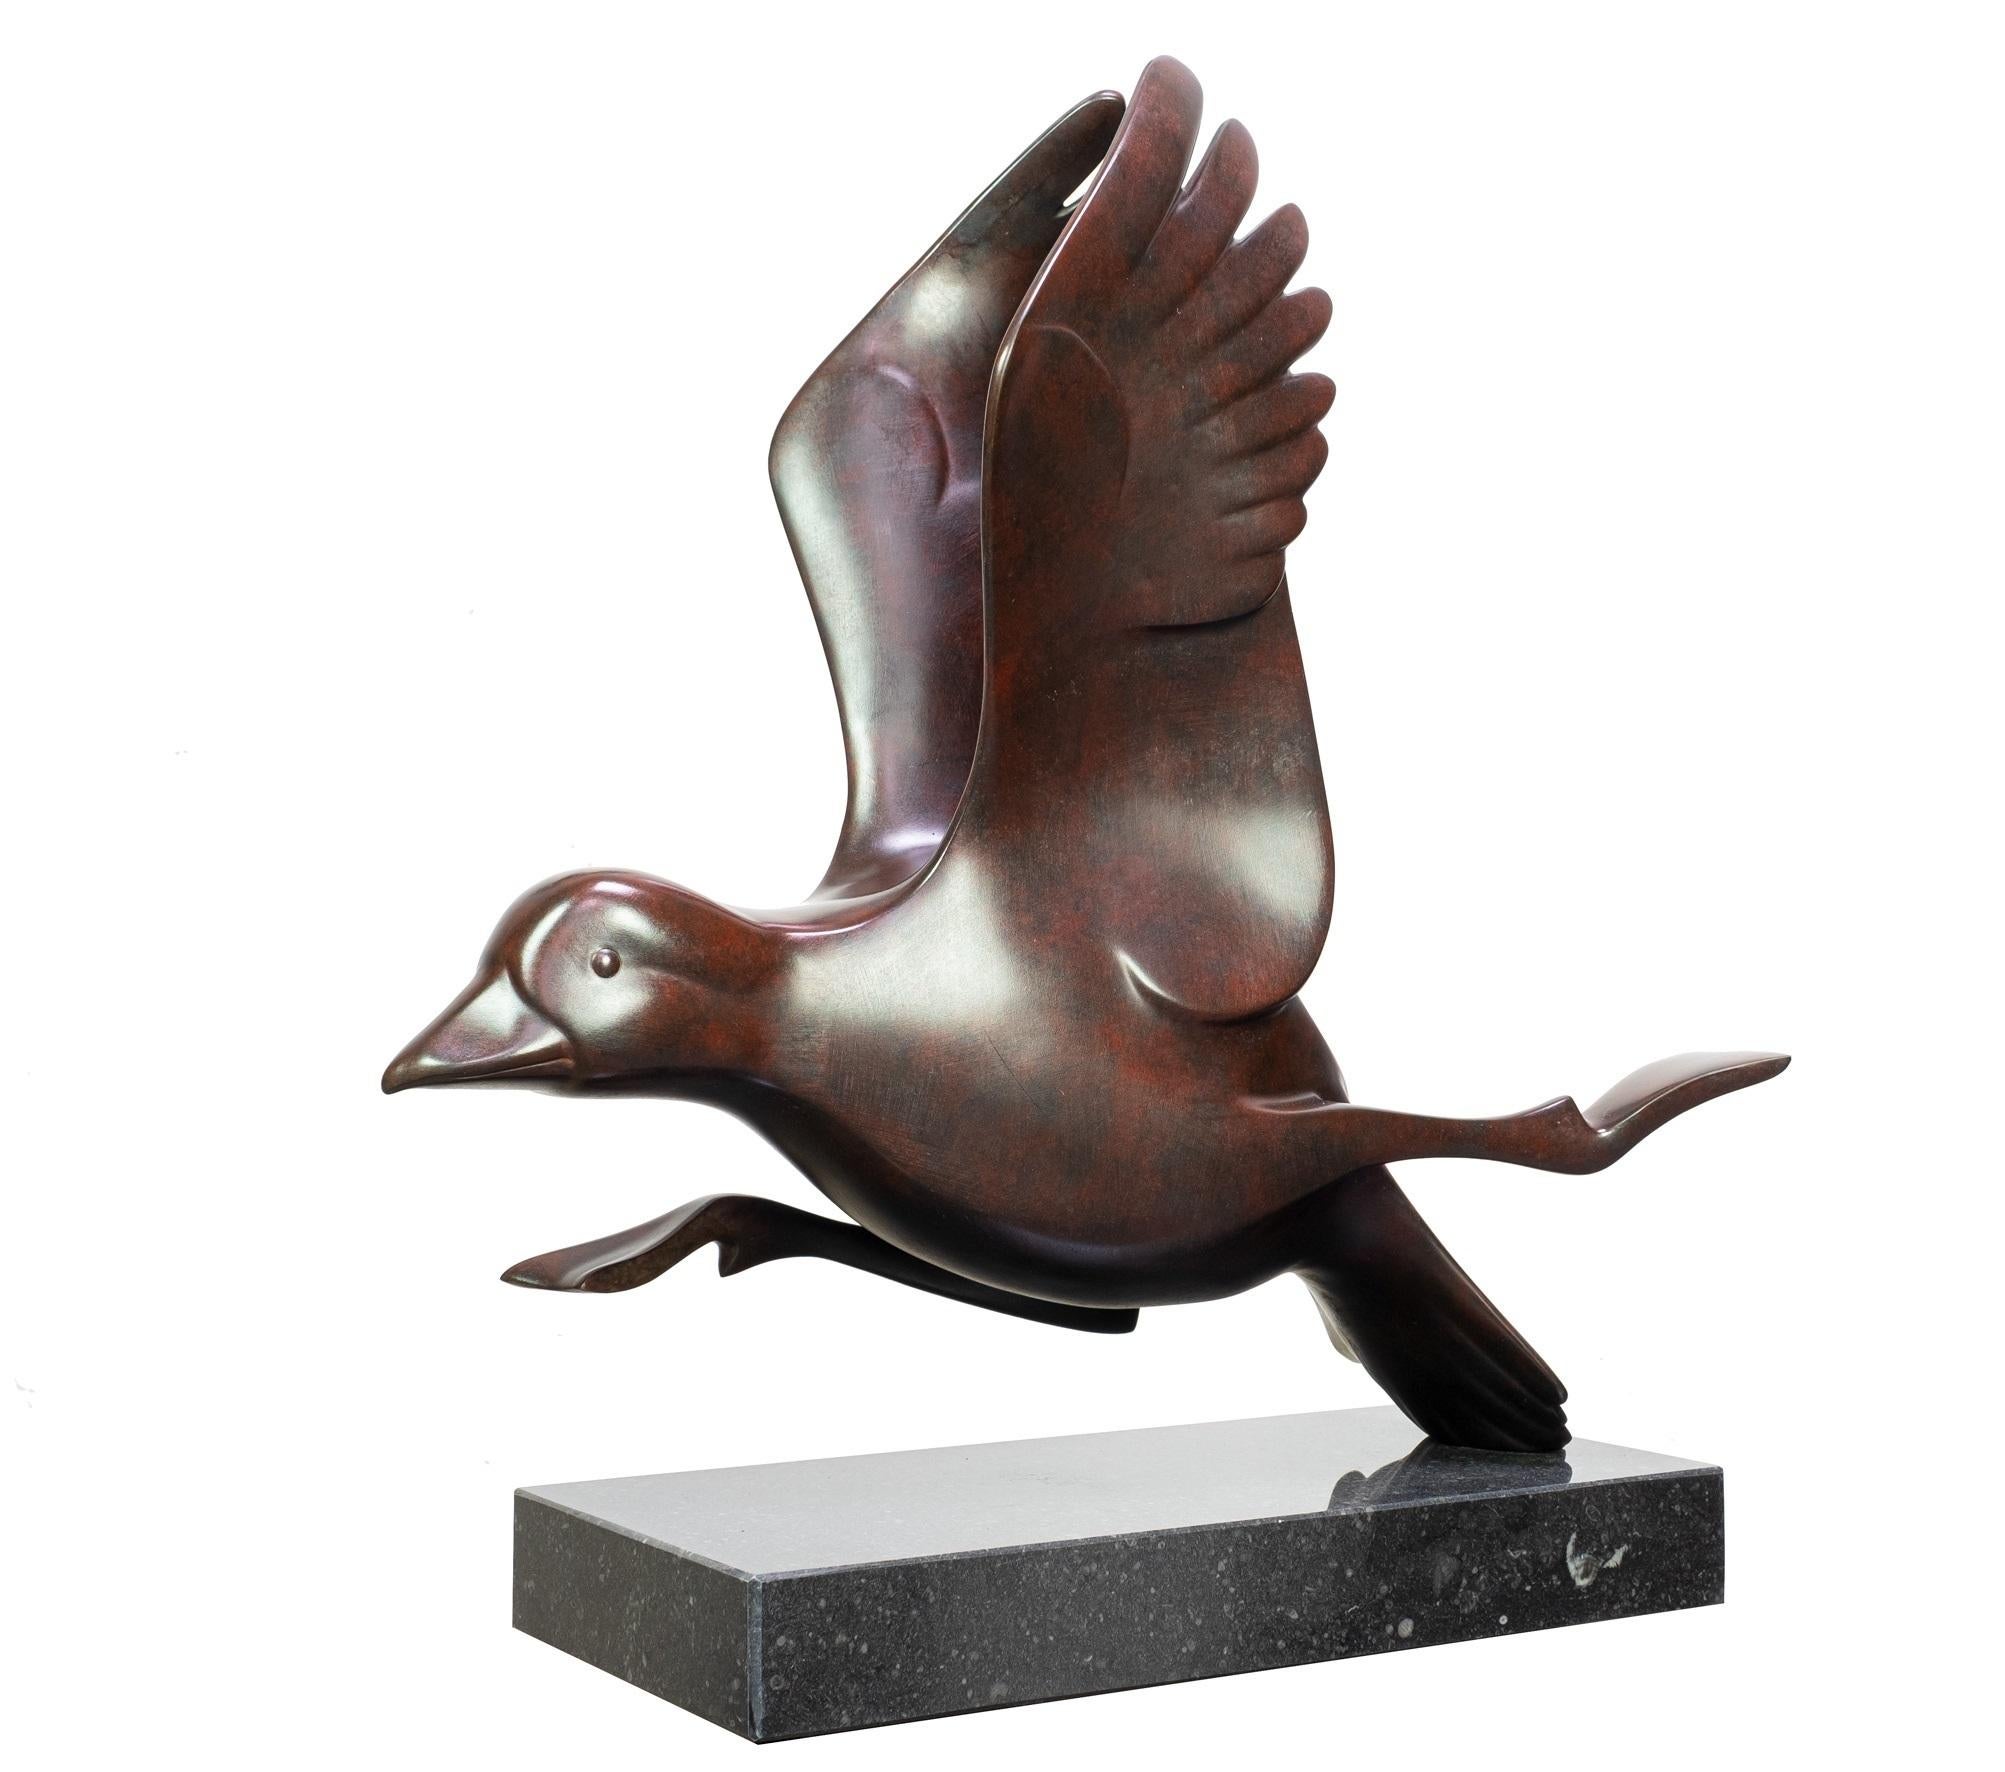 Evert den Hartog Figurative Sculpture - Rennende Eend no. 2 Running Duck Bronze Animal Sculpture Contemporary